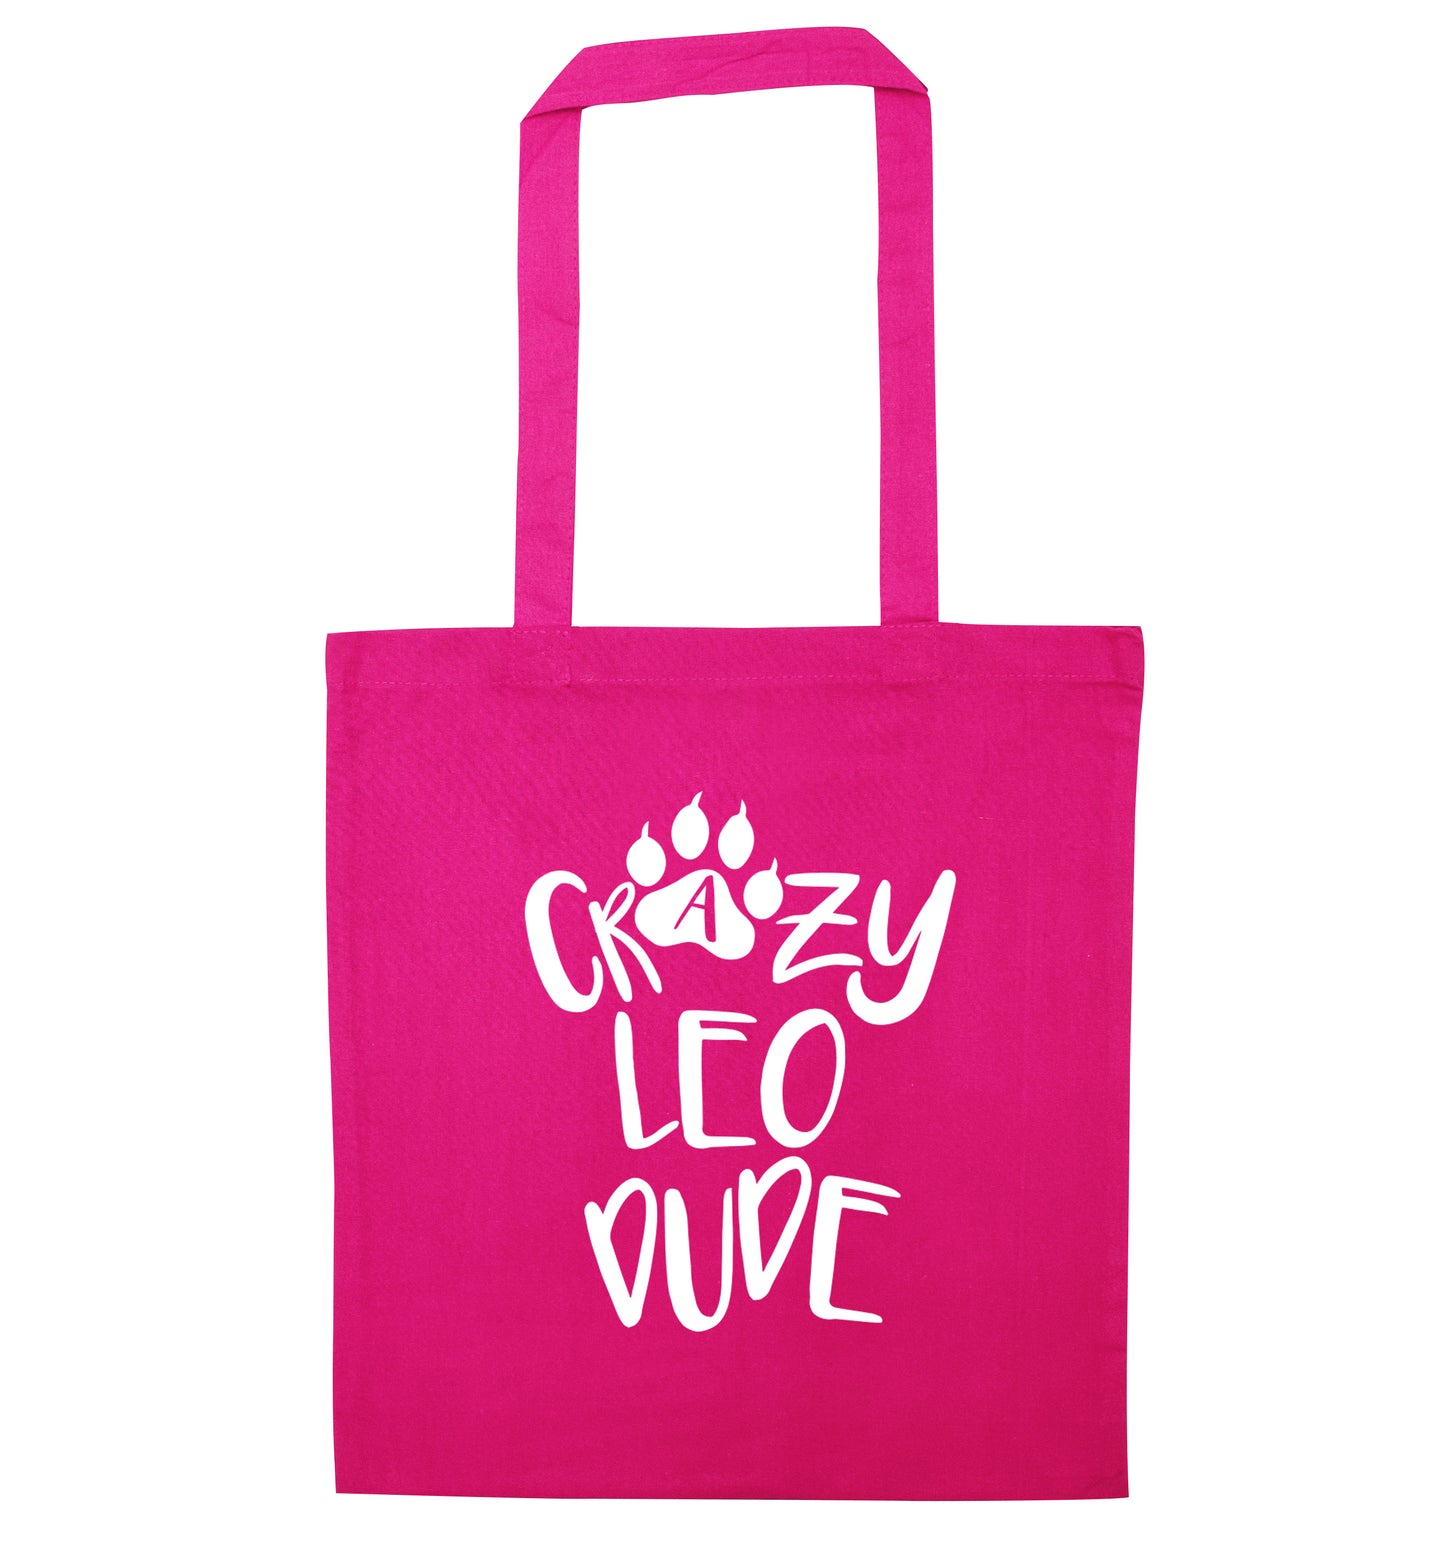 Crazy leo dude pink tote bag